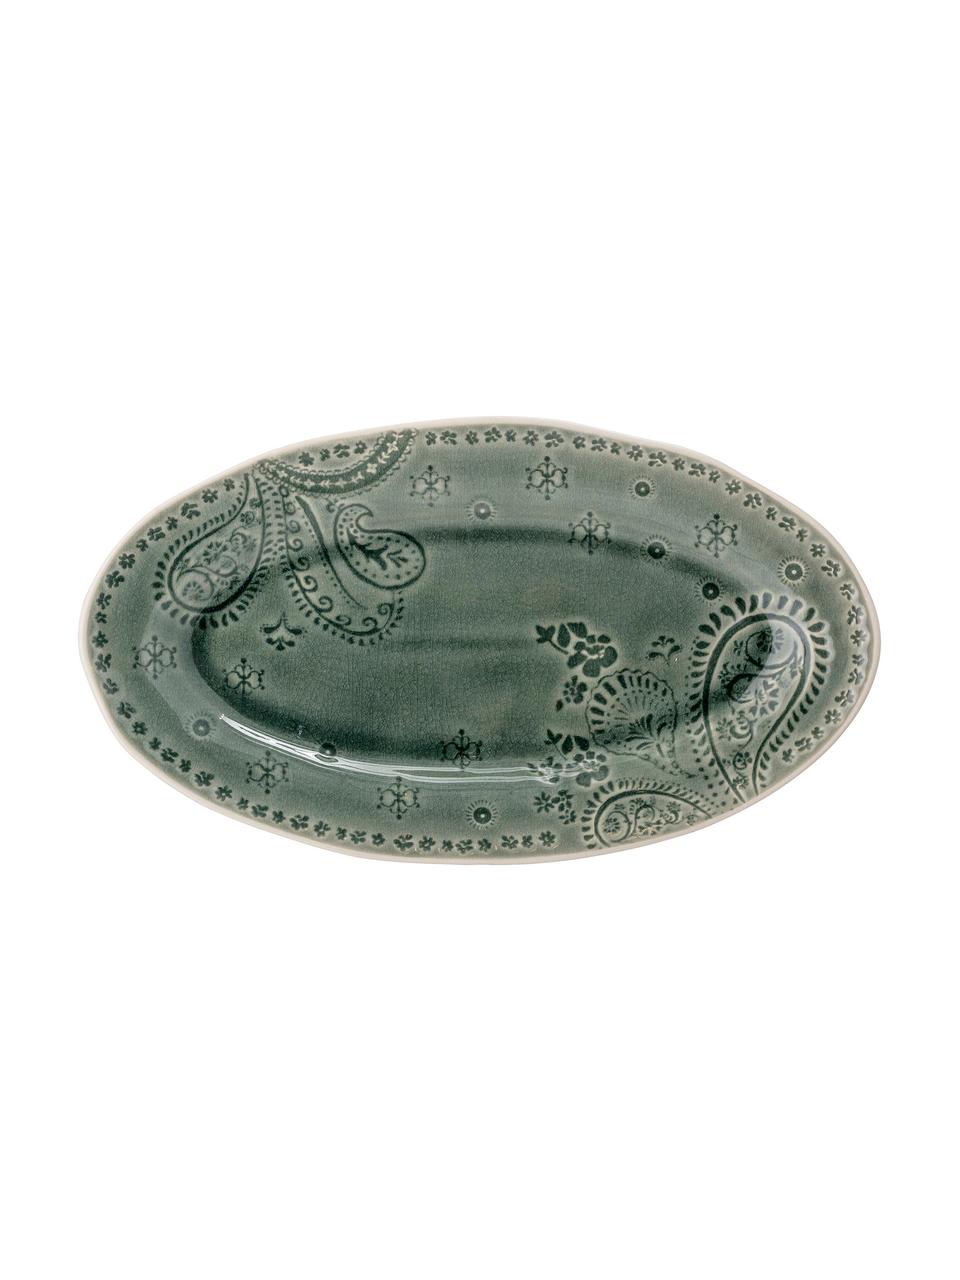 Handgemachte ovale Servierplatte Rani mit Verzierungen, L 35 x B 20 cm, Steingut, Grün, 20 x 35 cm